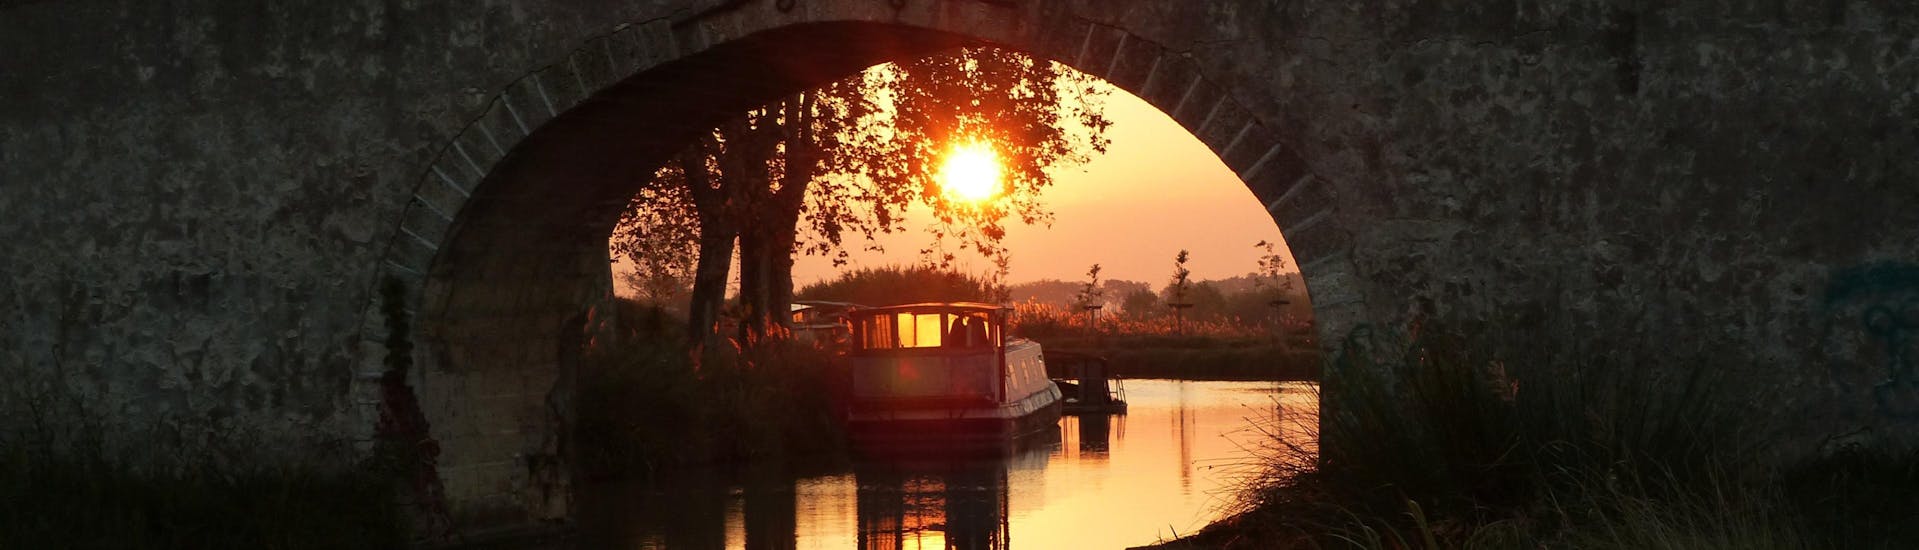 Levé du Soleil sur un pont du Canal du midi avec Exclusive Cruises France.